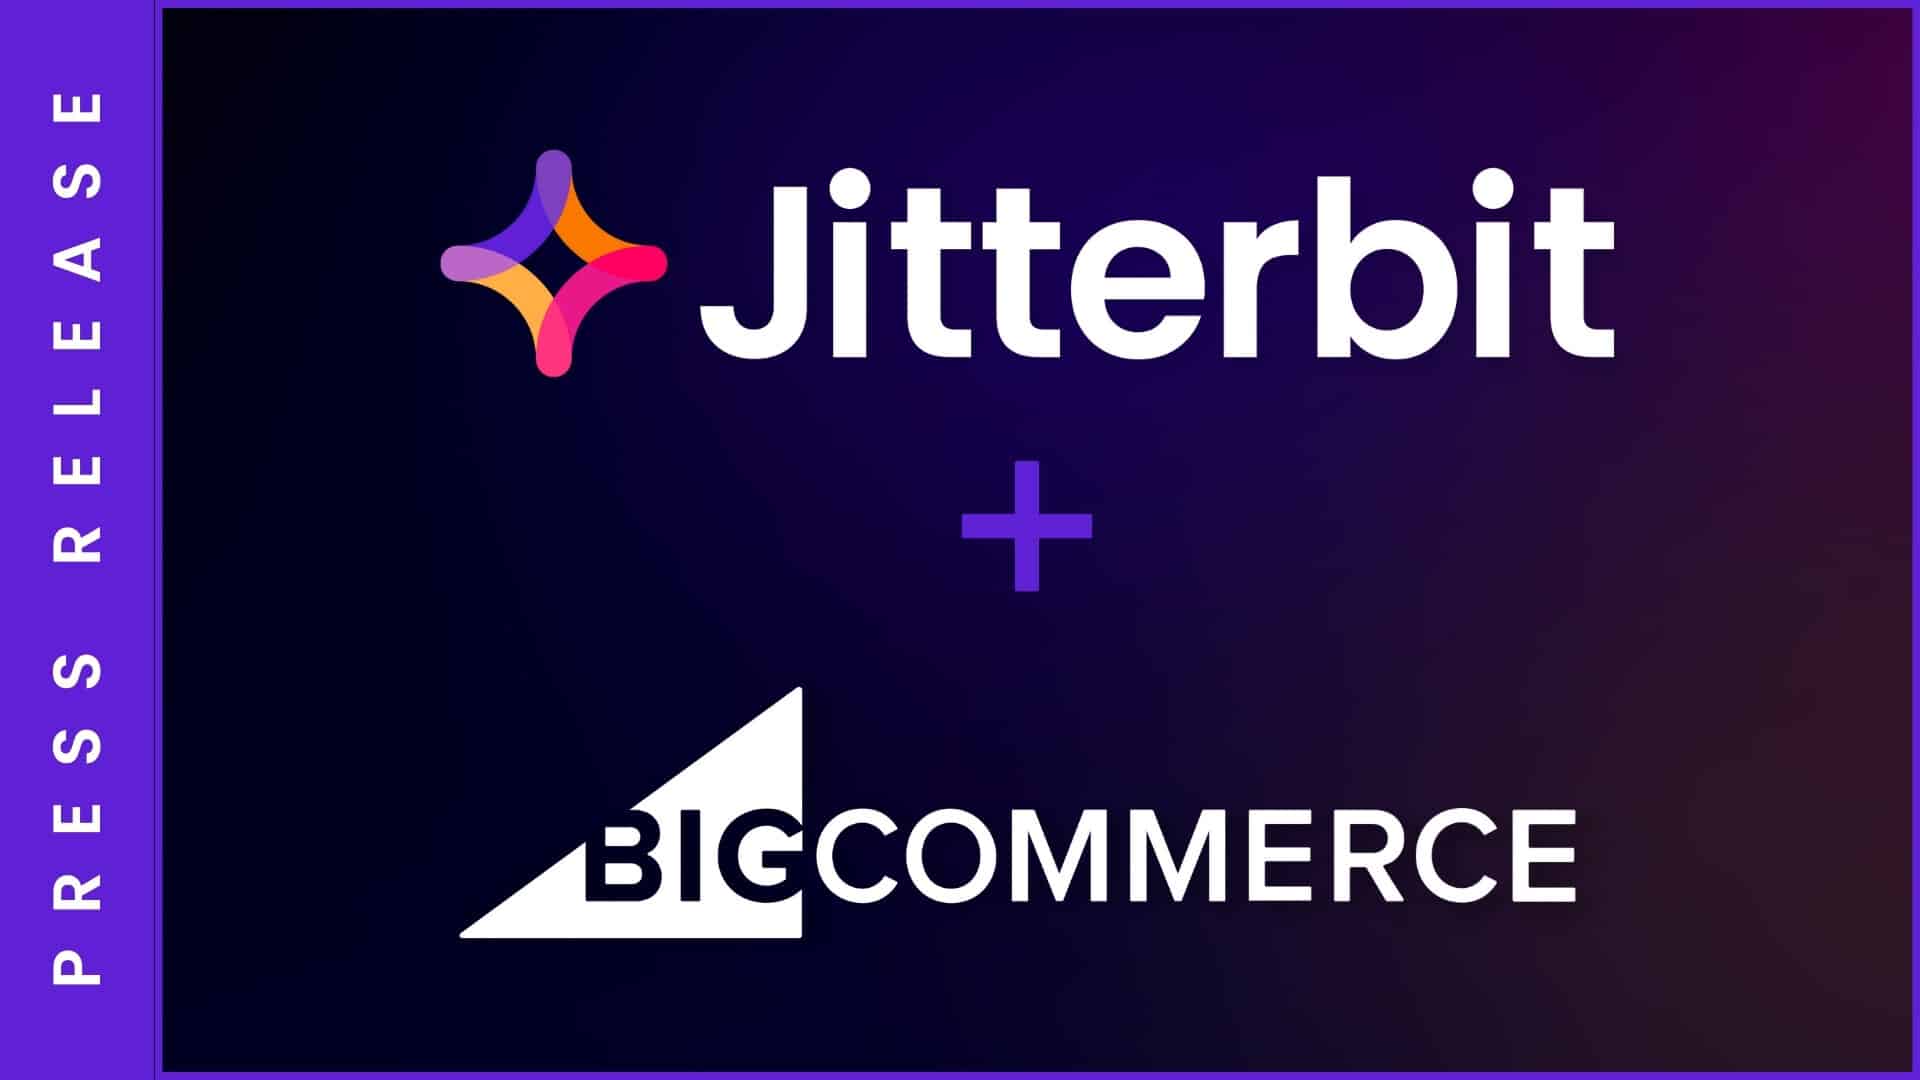 Jitterbit and BigCommerce